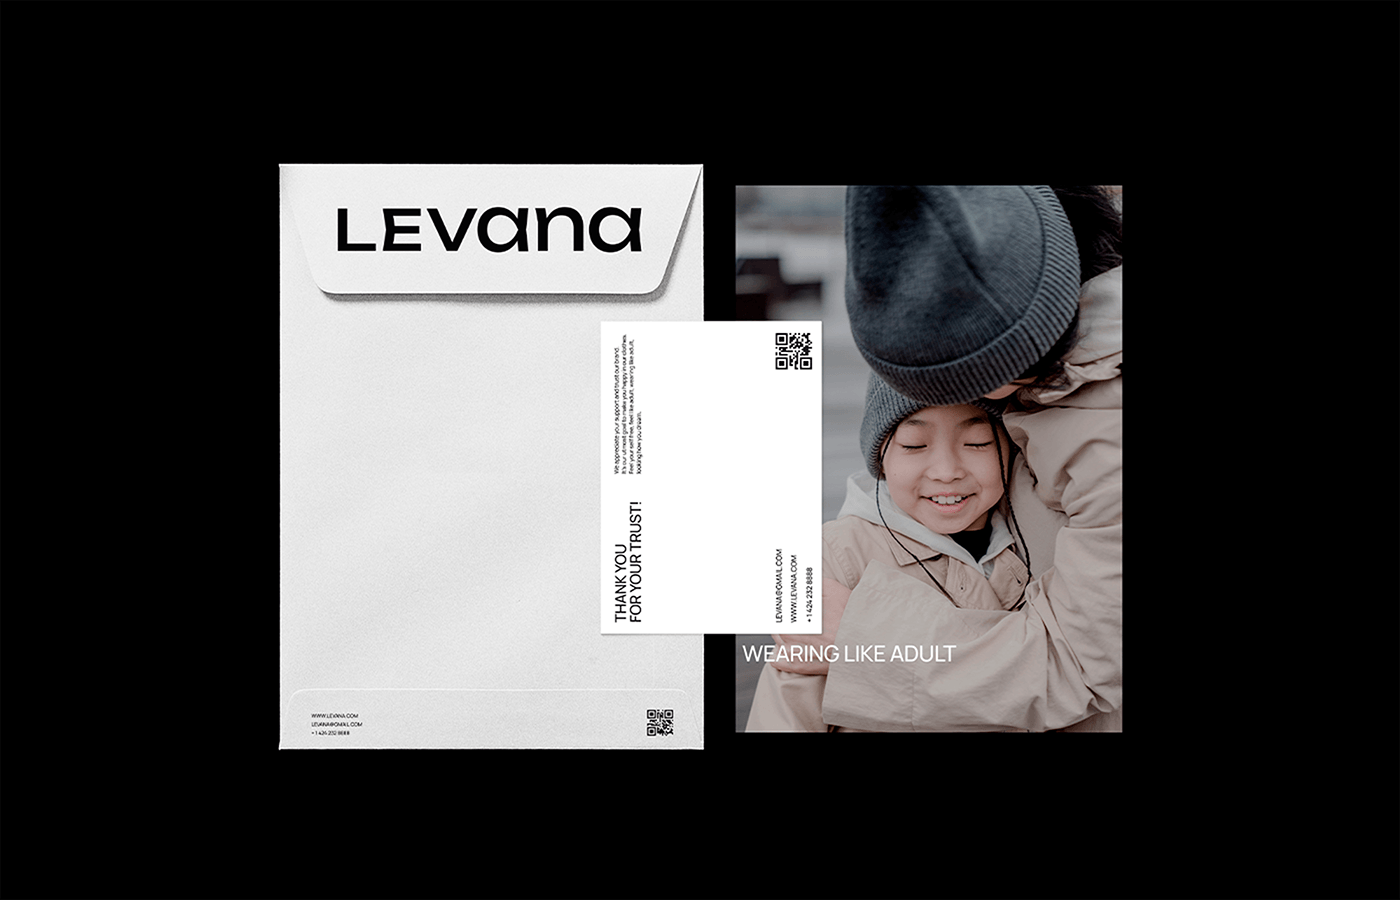 Branding for kids wear brand Levana